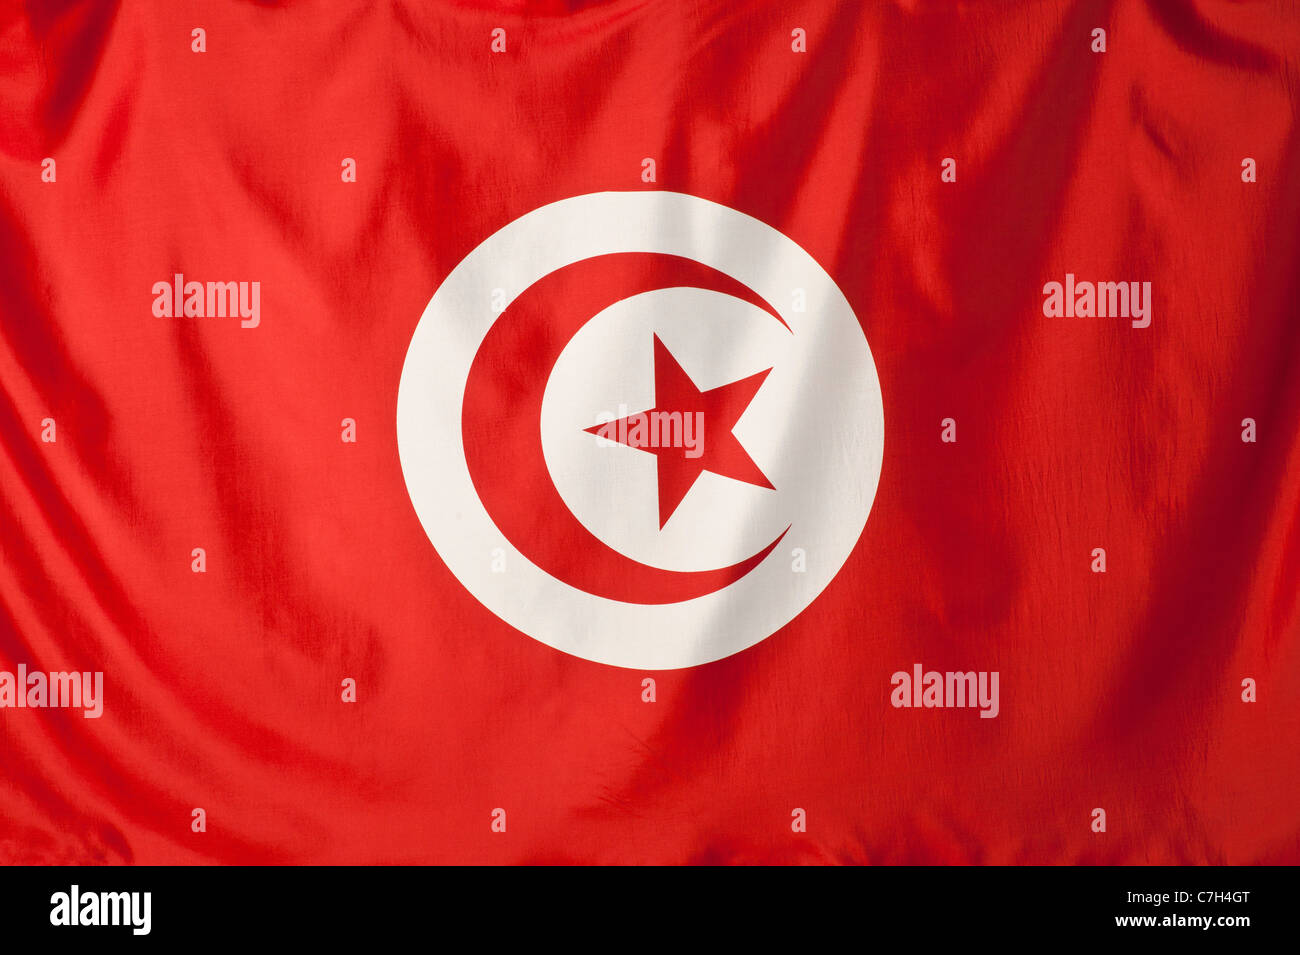 Tunesien Fahne Roten Halbmond Und Roten Stern In Einem Weissen Kreis Mit Einem Roten Hintergrund Stockfotografie Alamy